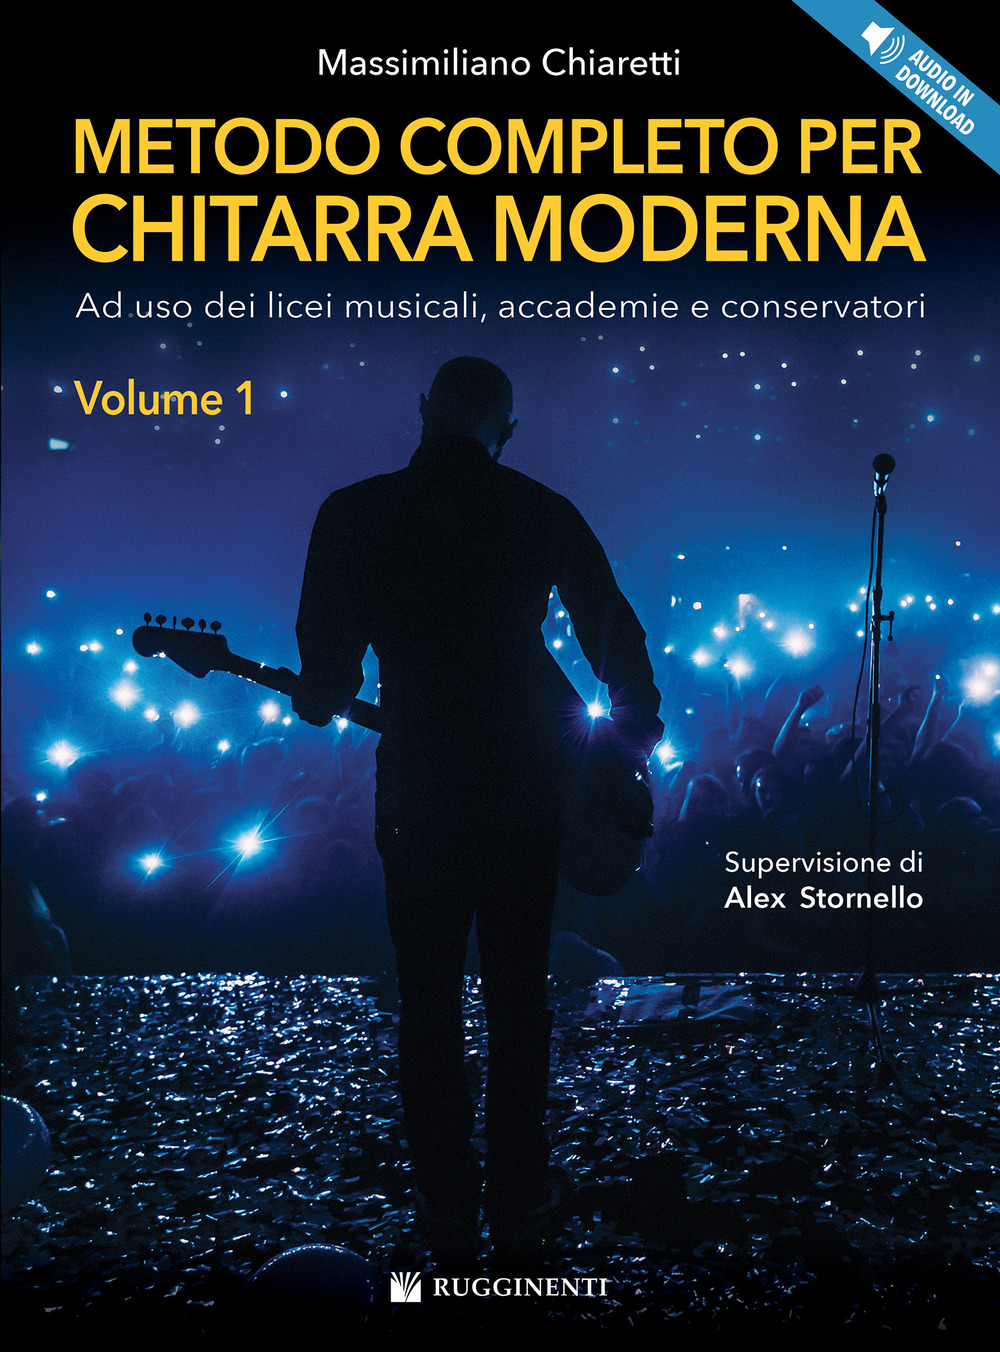 Metodo completo per chitarra moderna. Ad uso dei licei musicali, accademie e conservatori. Con File audio per il download. Vol. 1